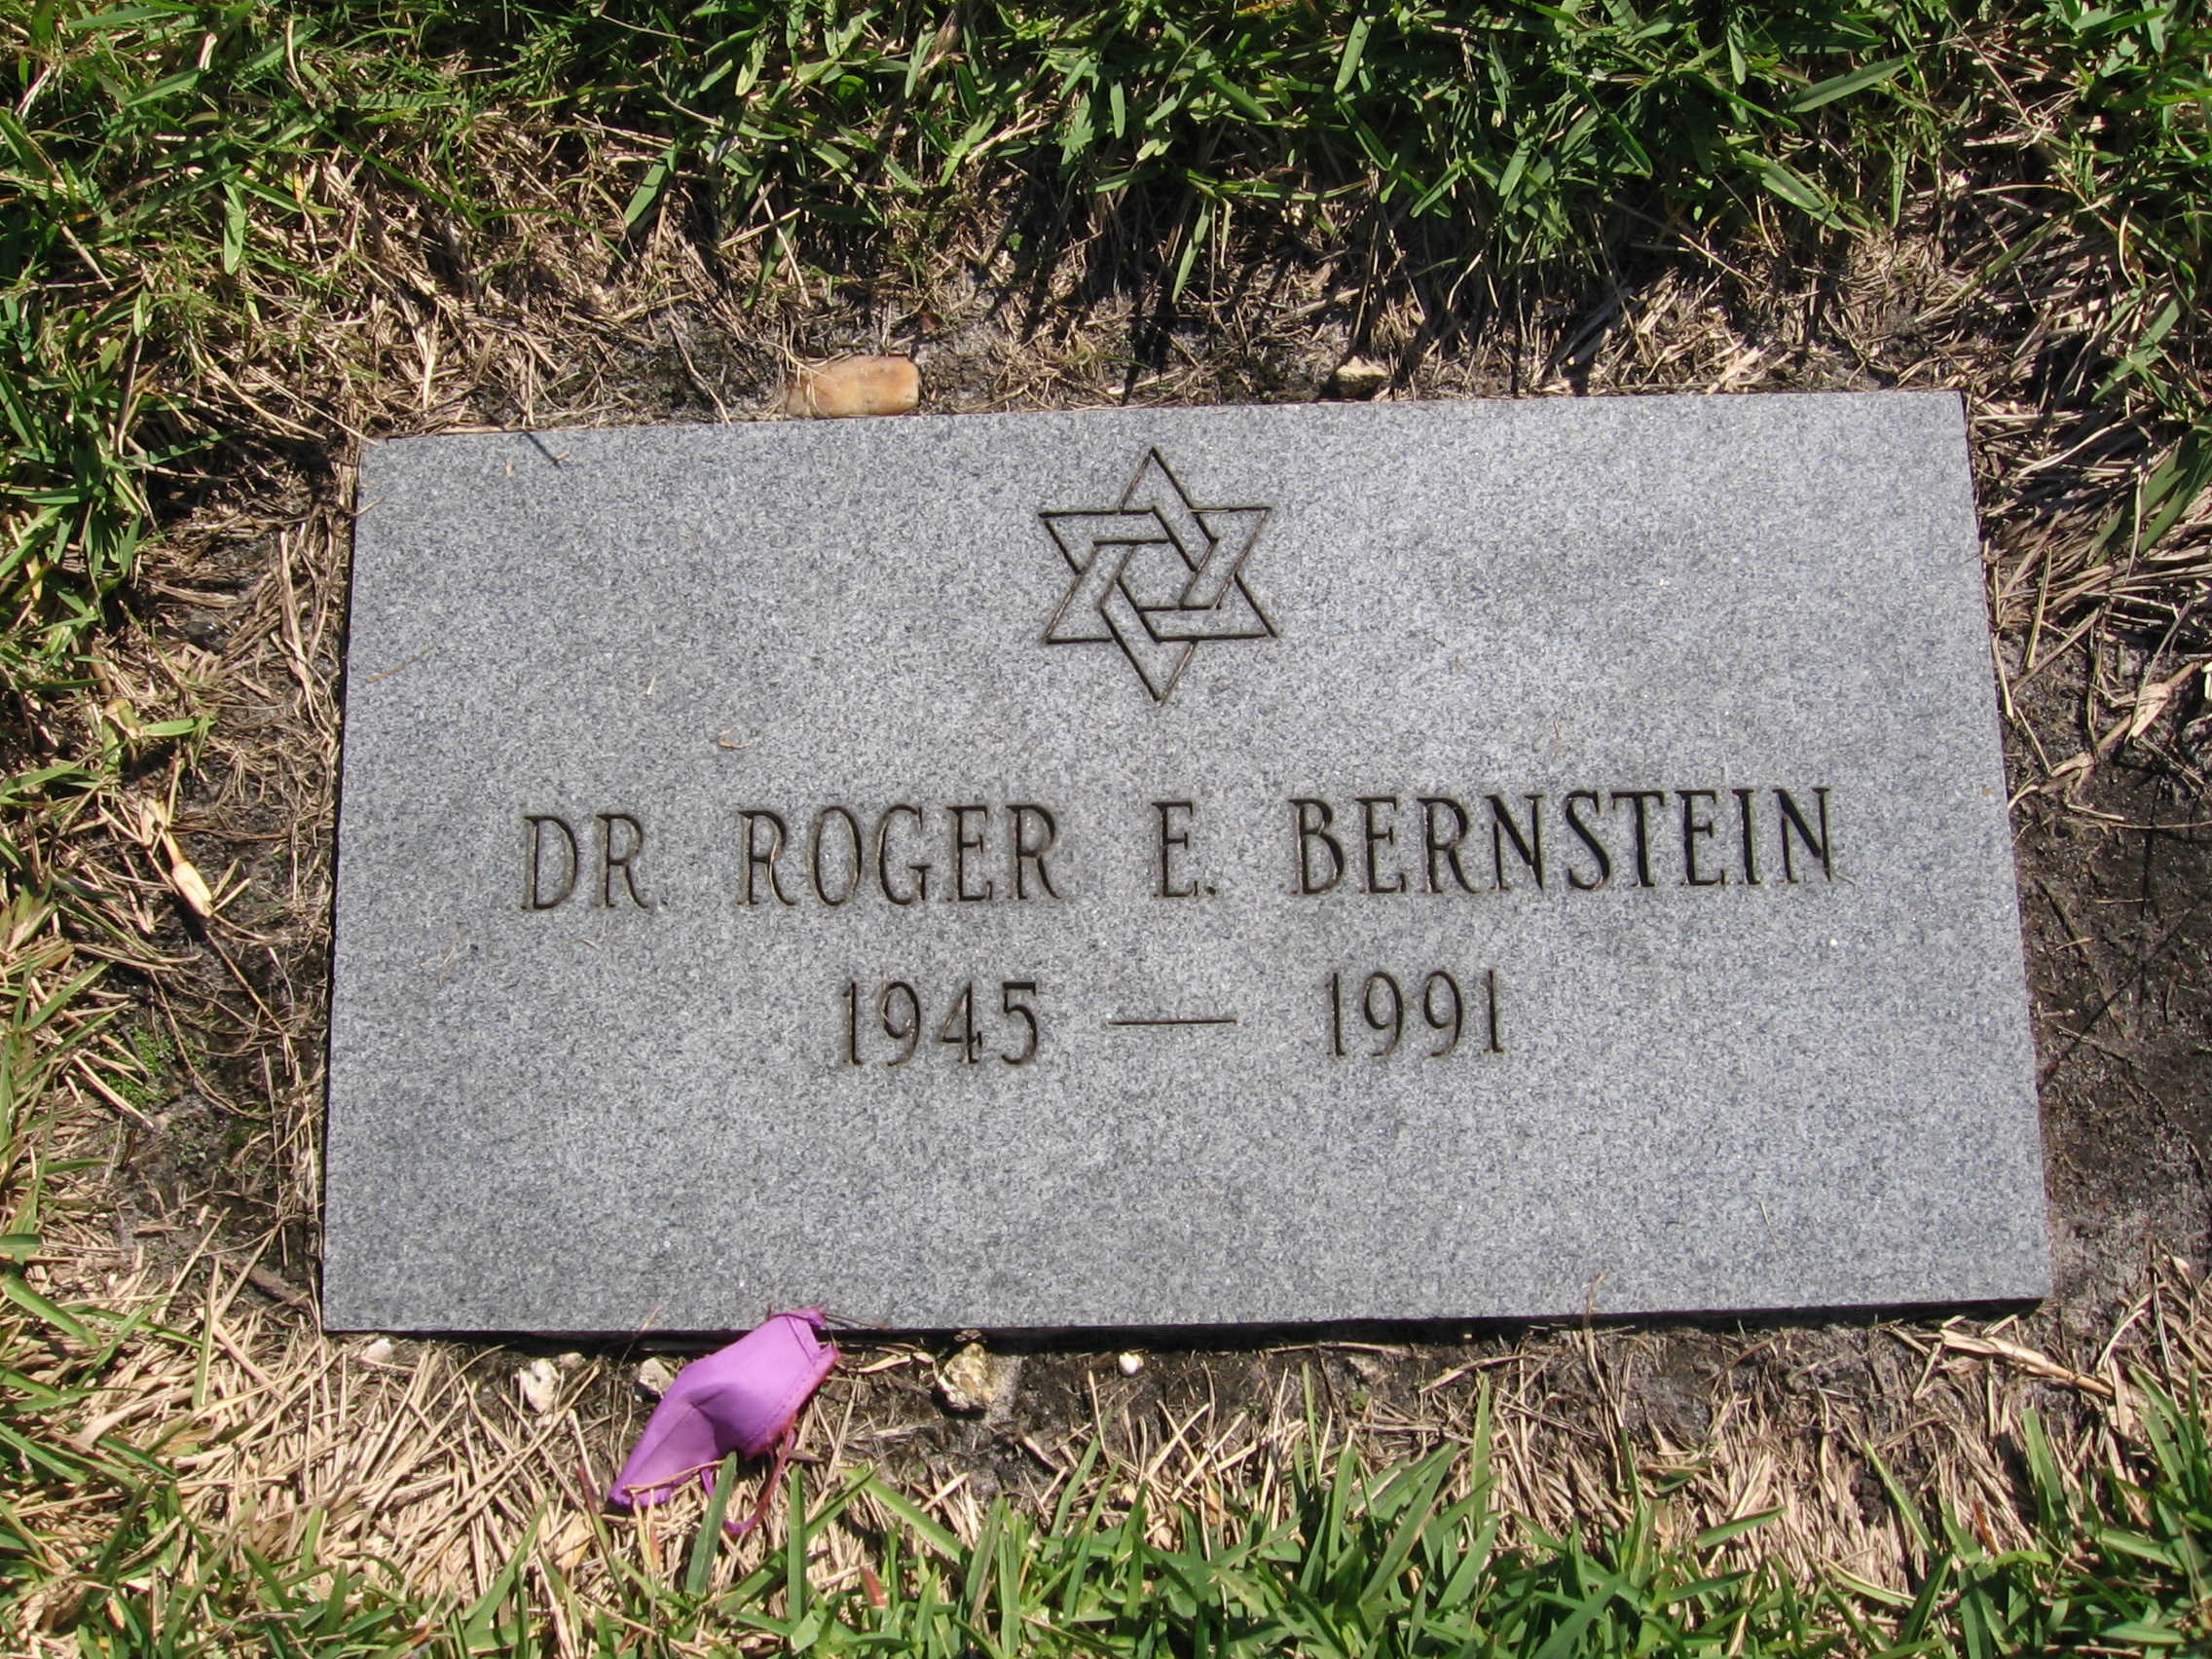 Dr Roger E Bernstein